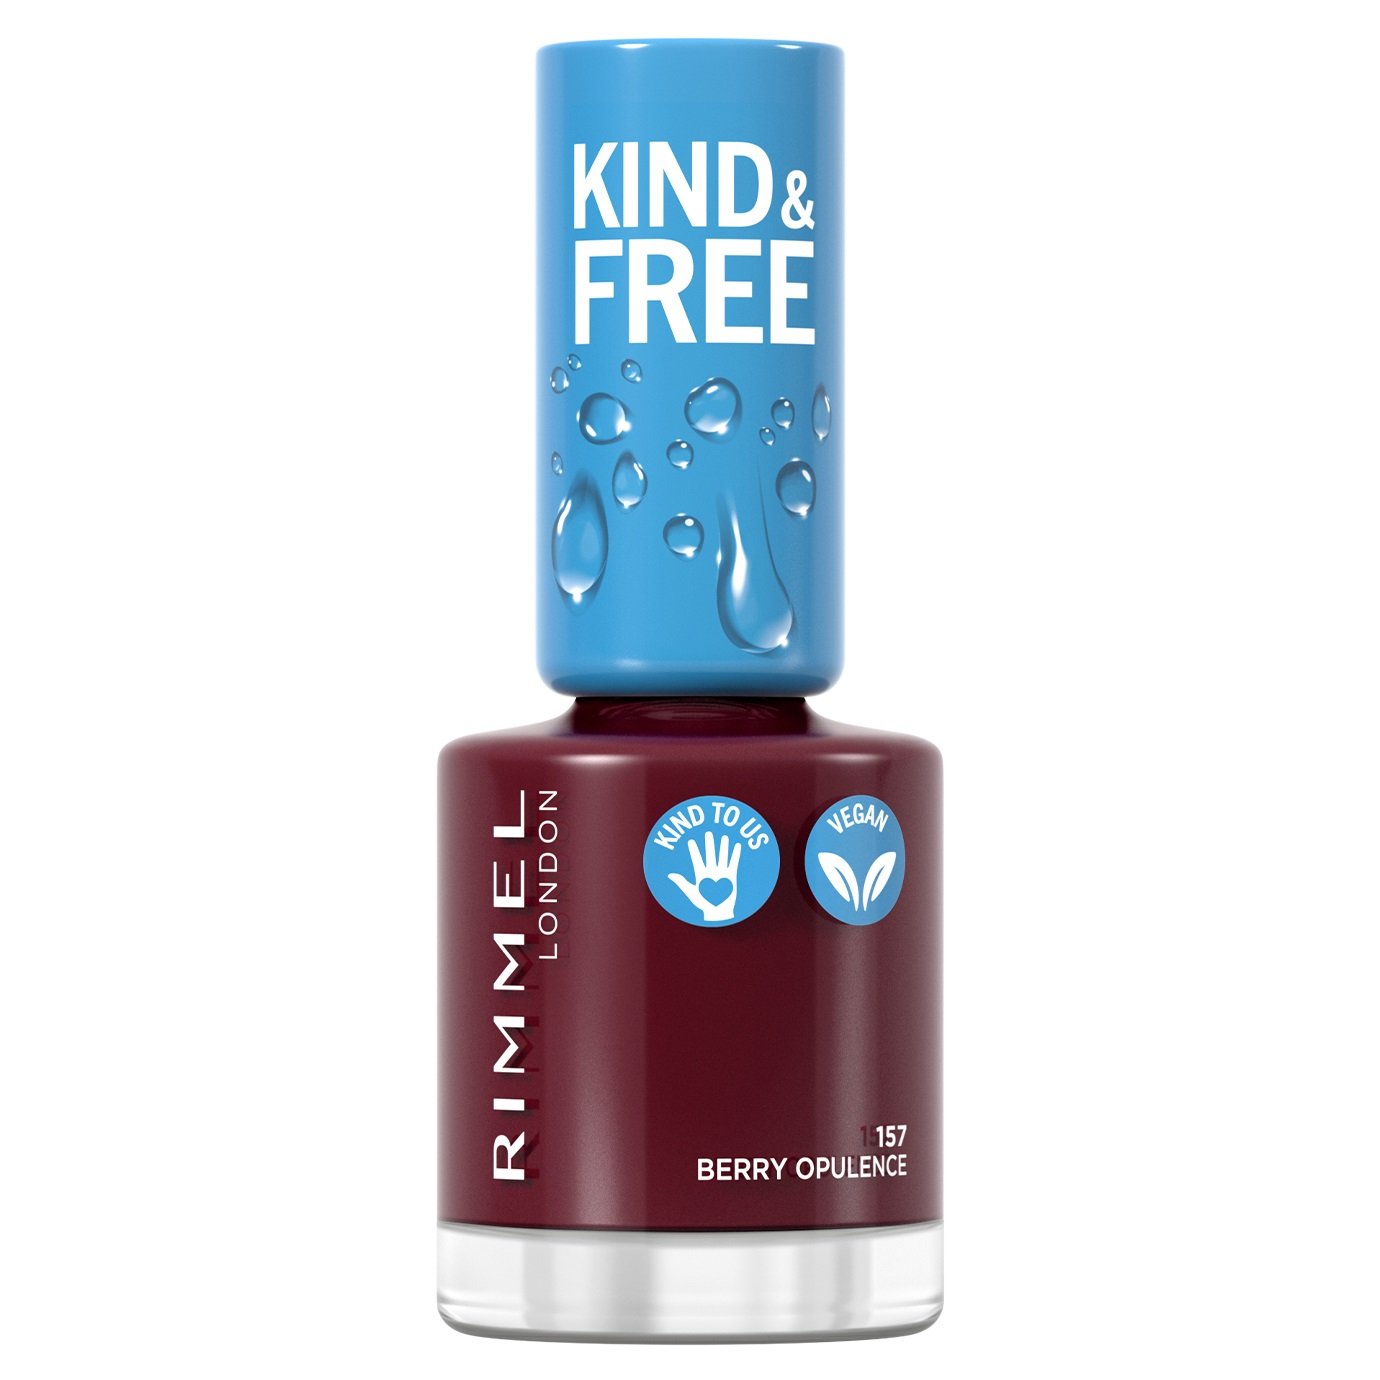 Лак для нігтів Rimmel Kind&Free, відтінок 157 (Berry Opulence), 8 мл (8000019959406) - фото 1